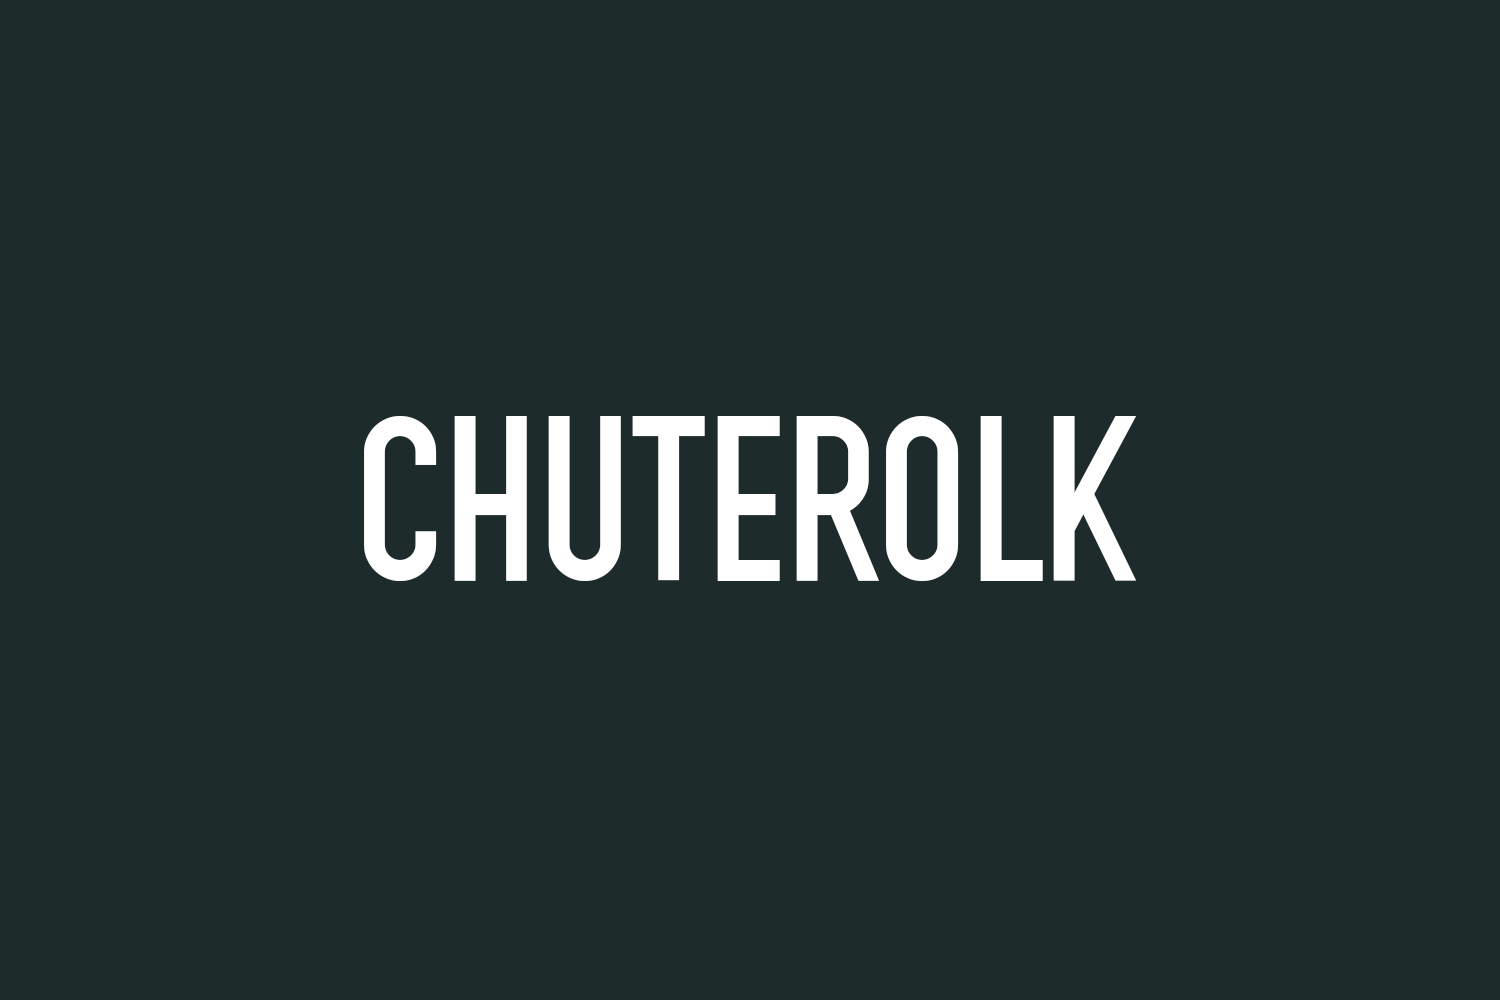 Chuterolk Free Font